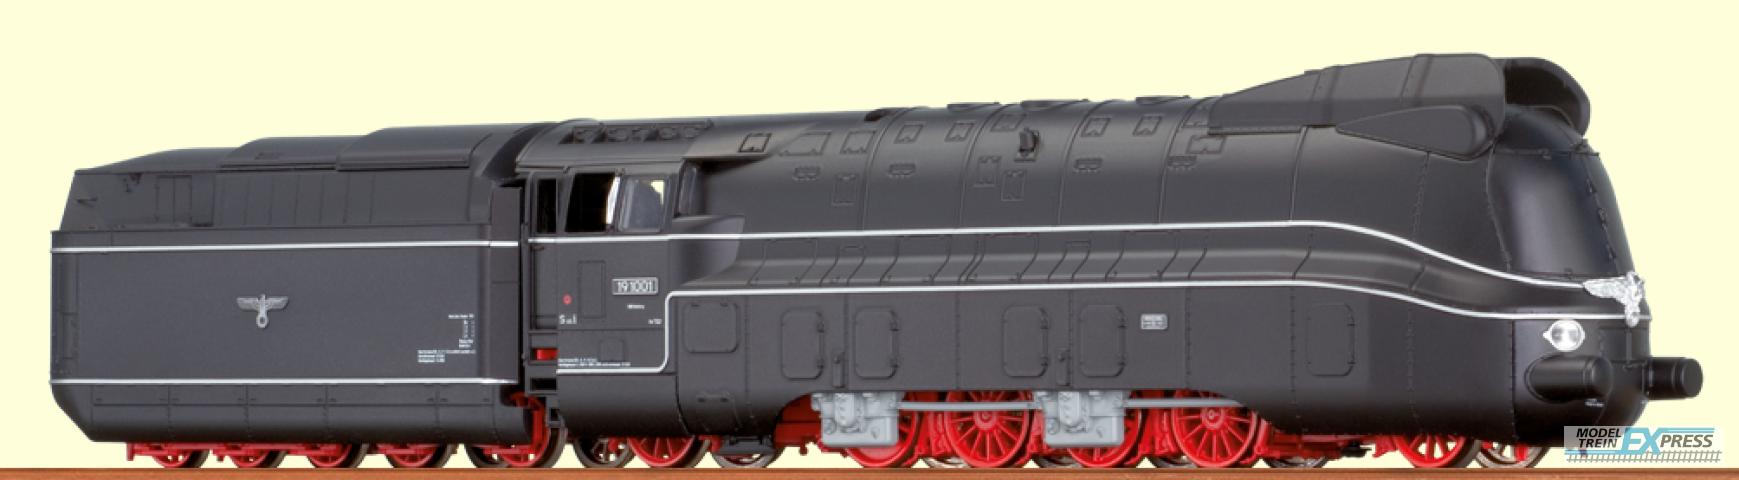 Brawa 40134 H0 = Dampflokomotive BR 19.10 DRG, II, DC